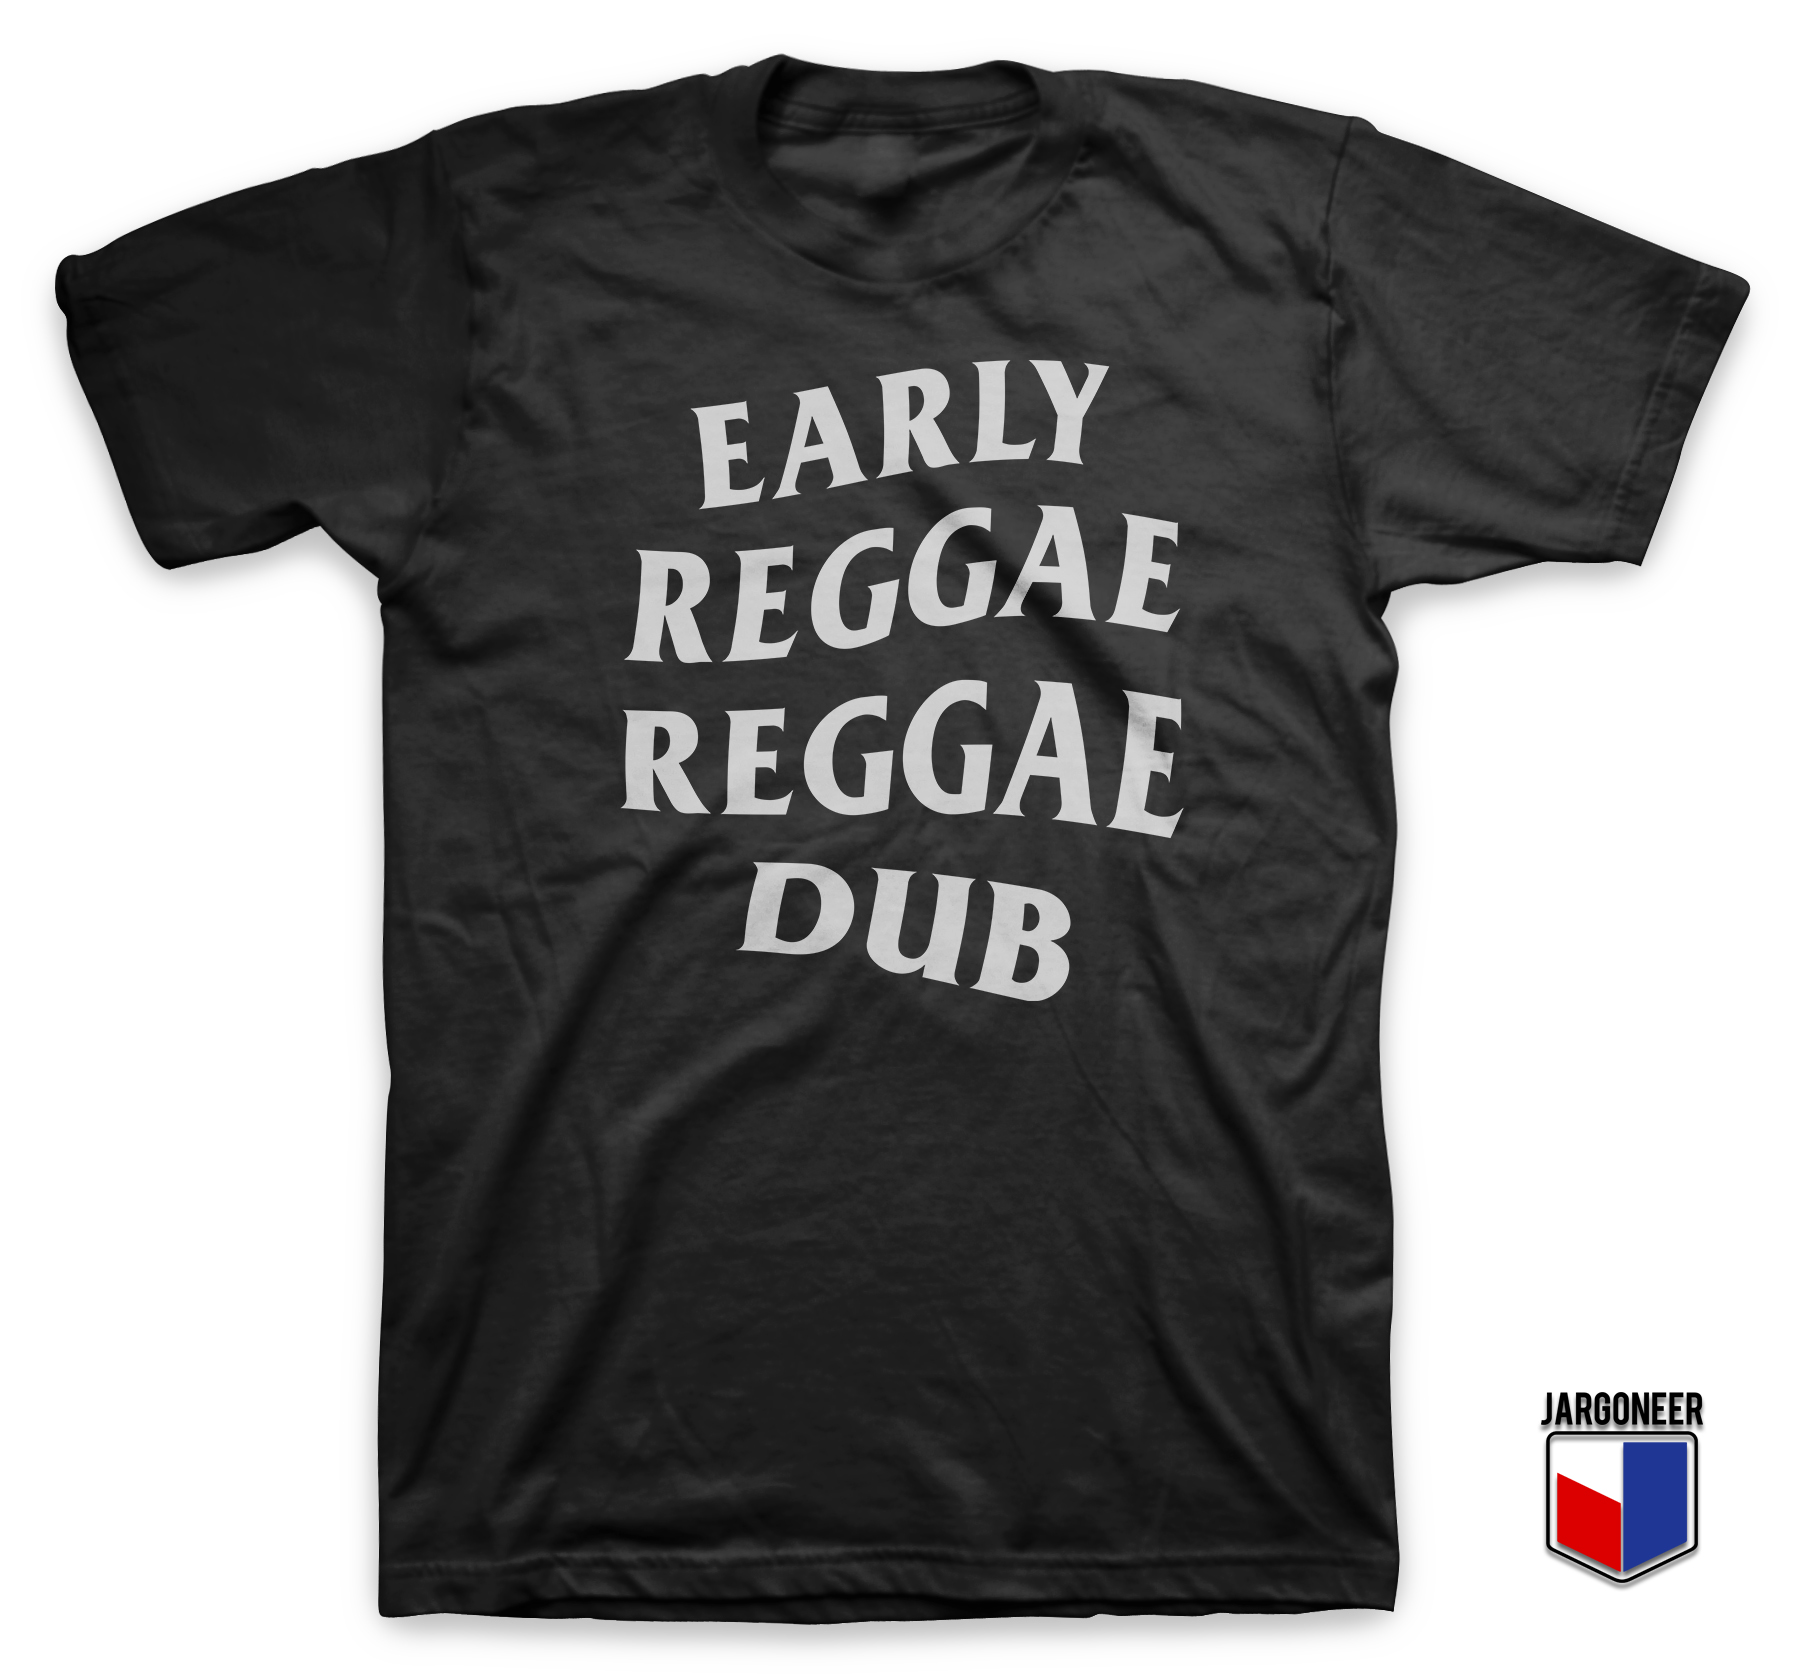 Early Reggae Reggae Dub Black TShirt - Shop Unique Graphic Cool Shirt Designs